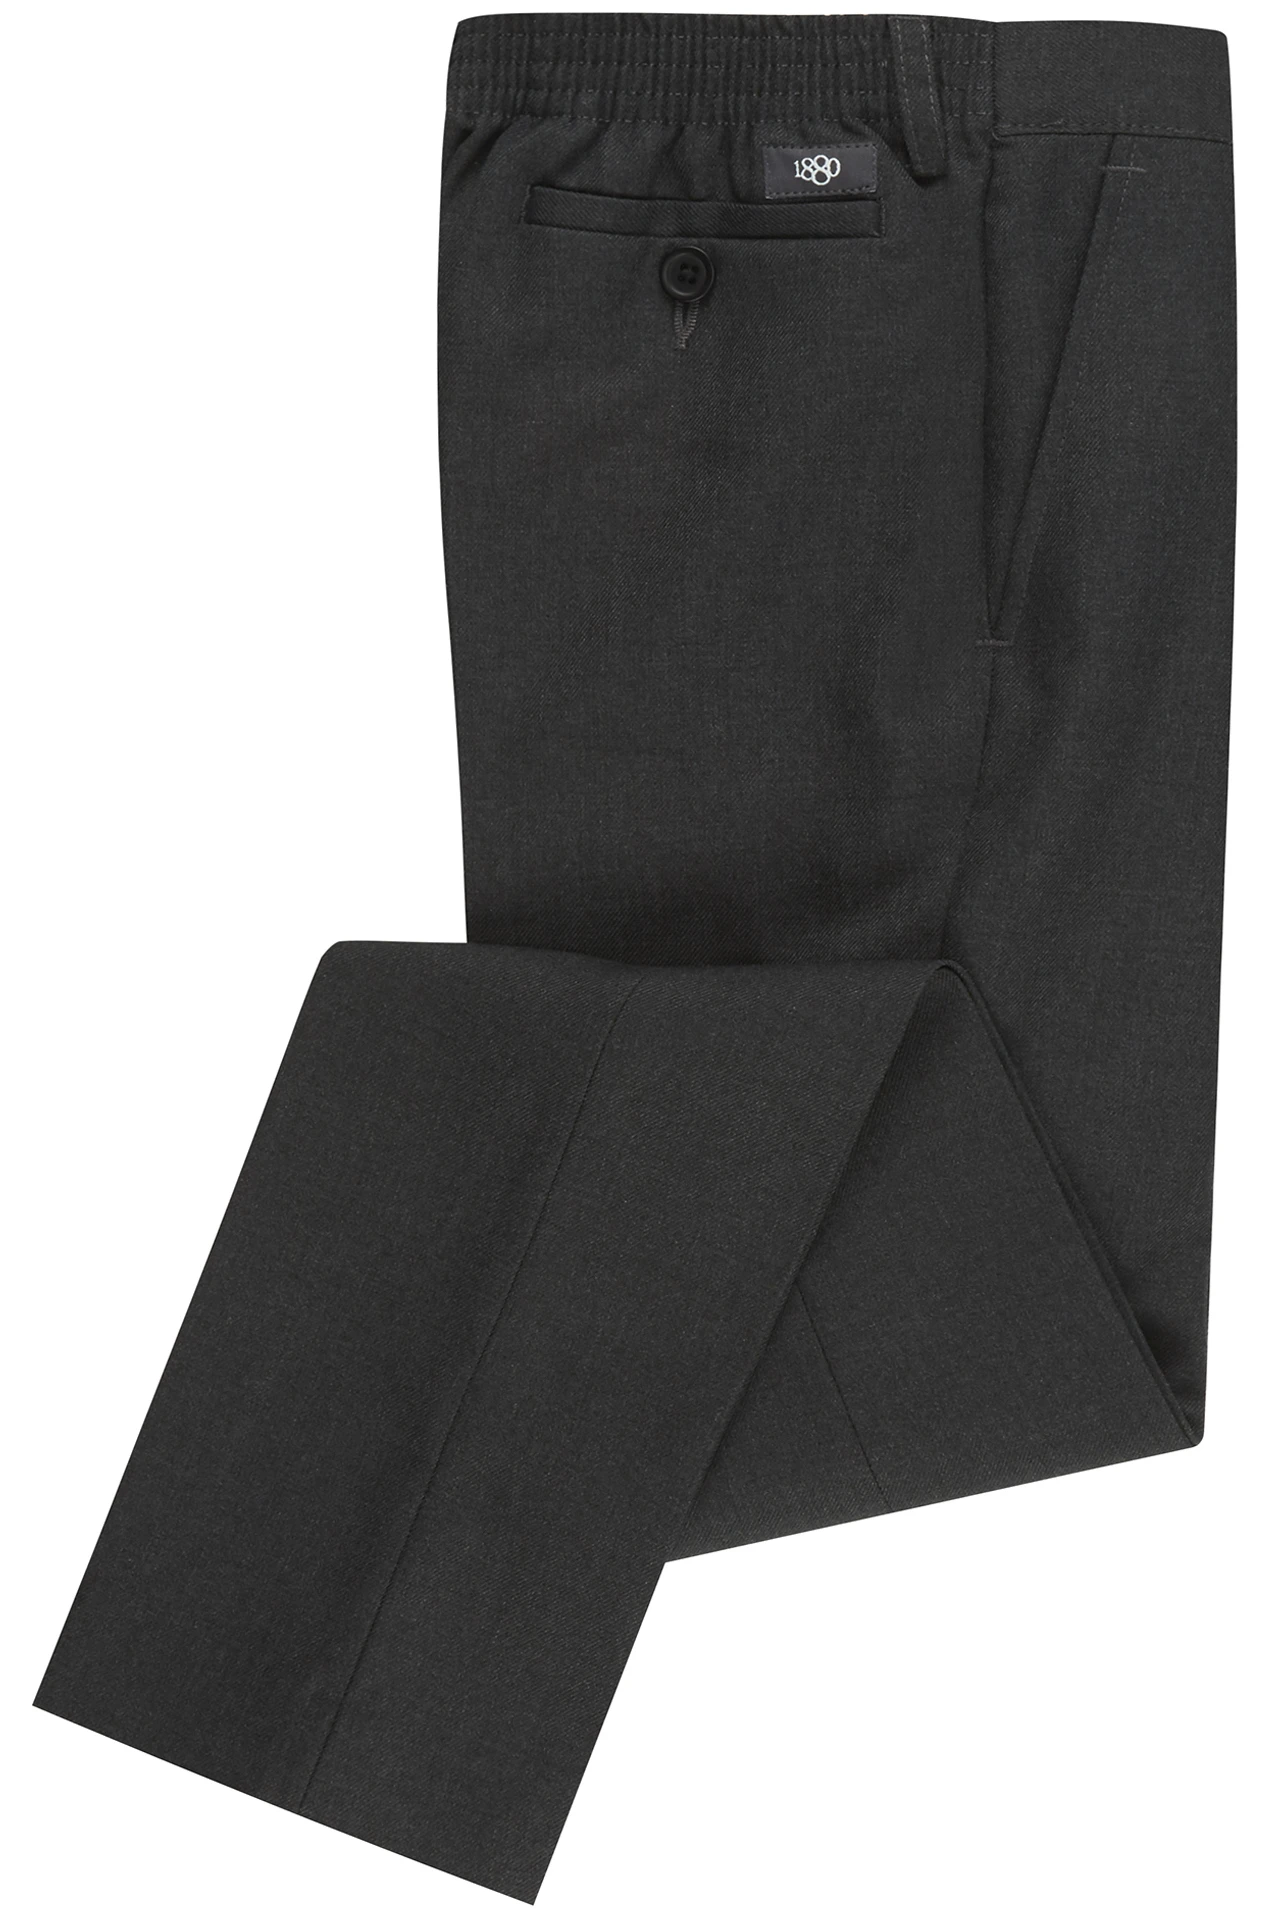 Grey School Trousers 1880 club Plus Fit fully elastic waist